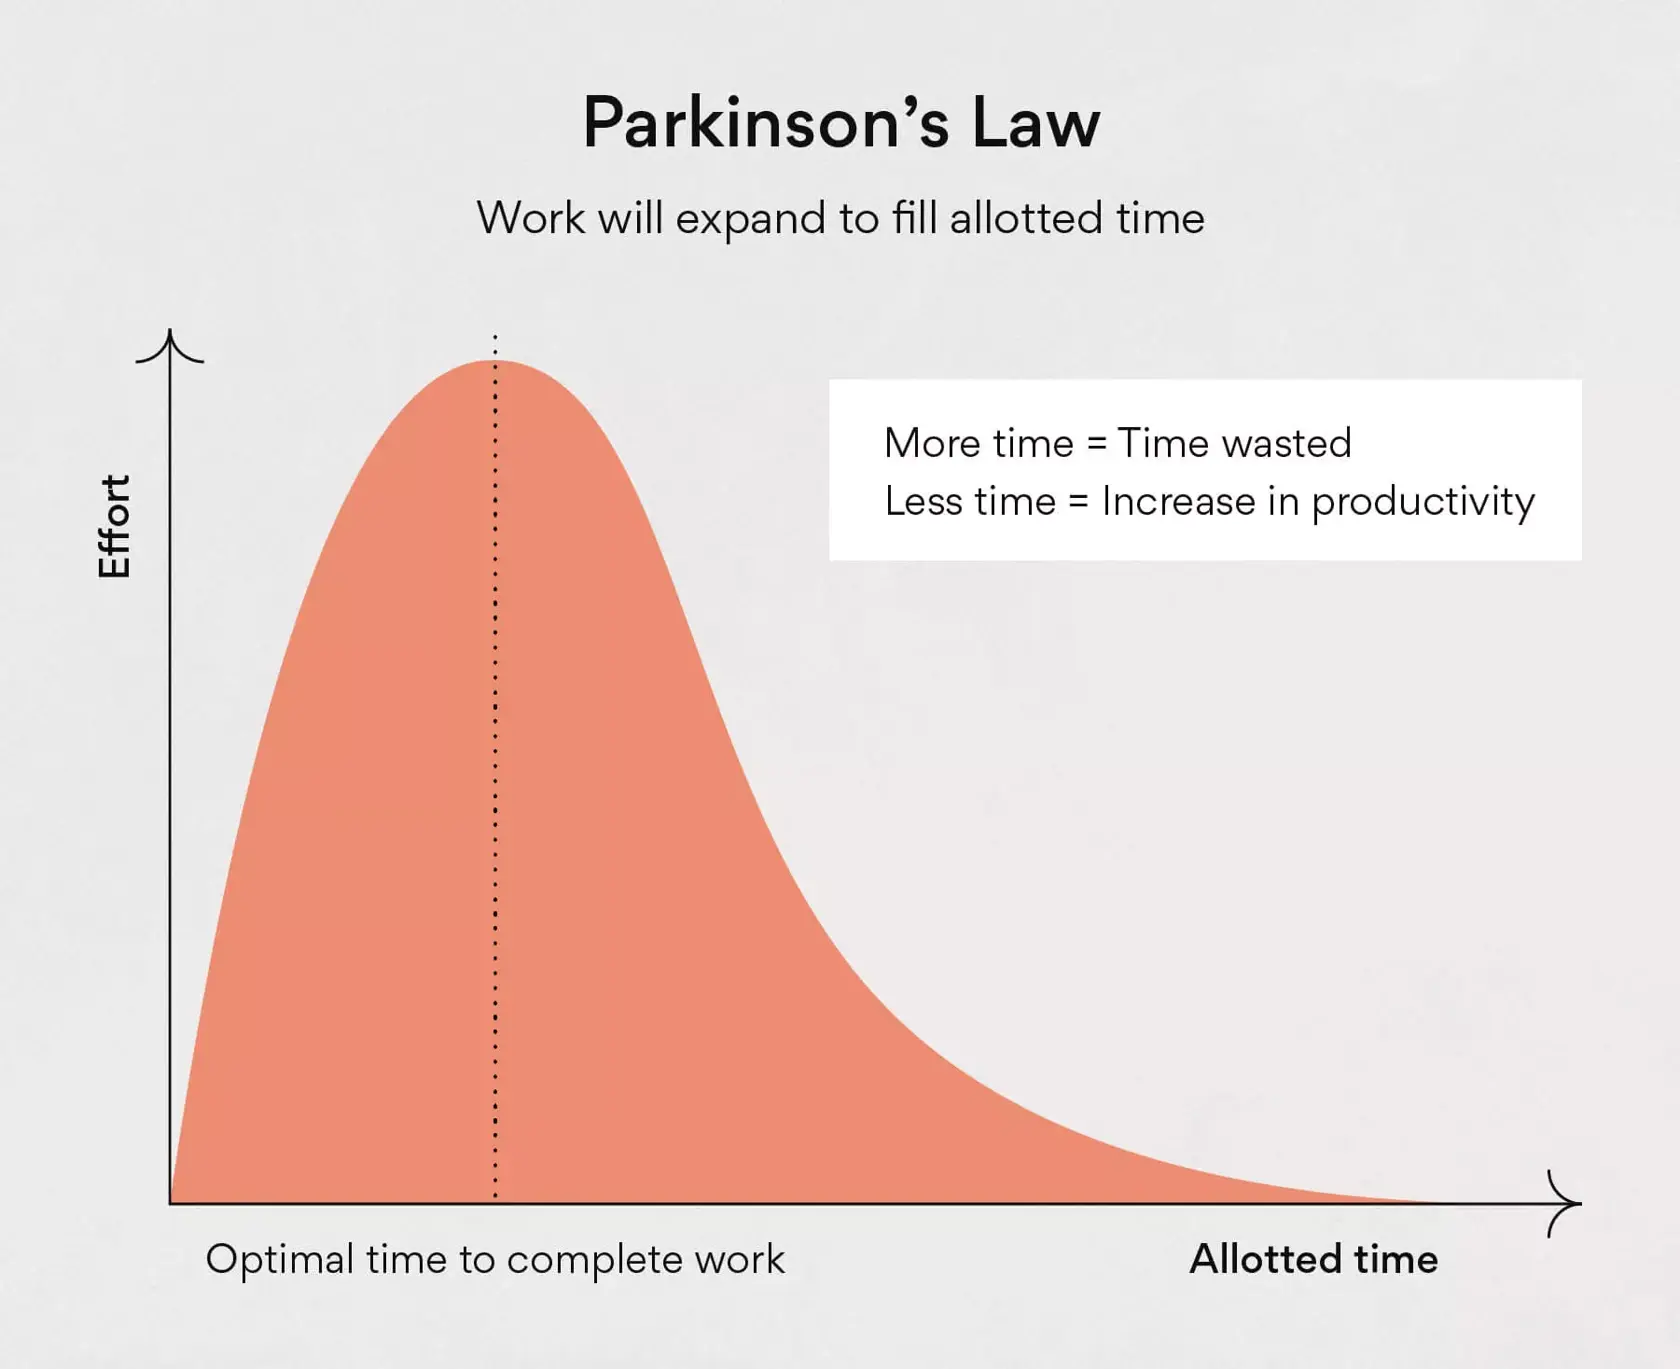 Por que o trabalho se estende para preencher o tempo disponível?